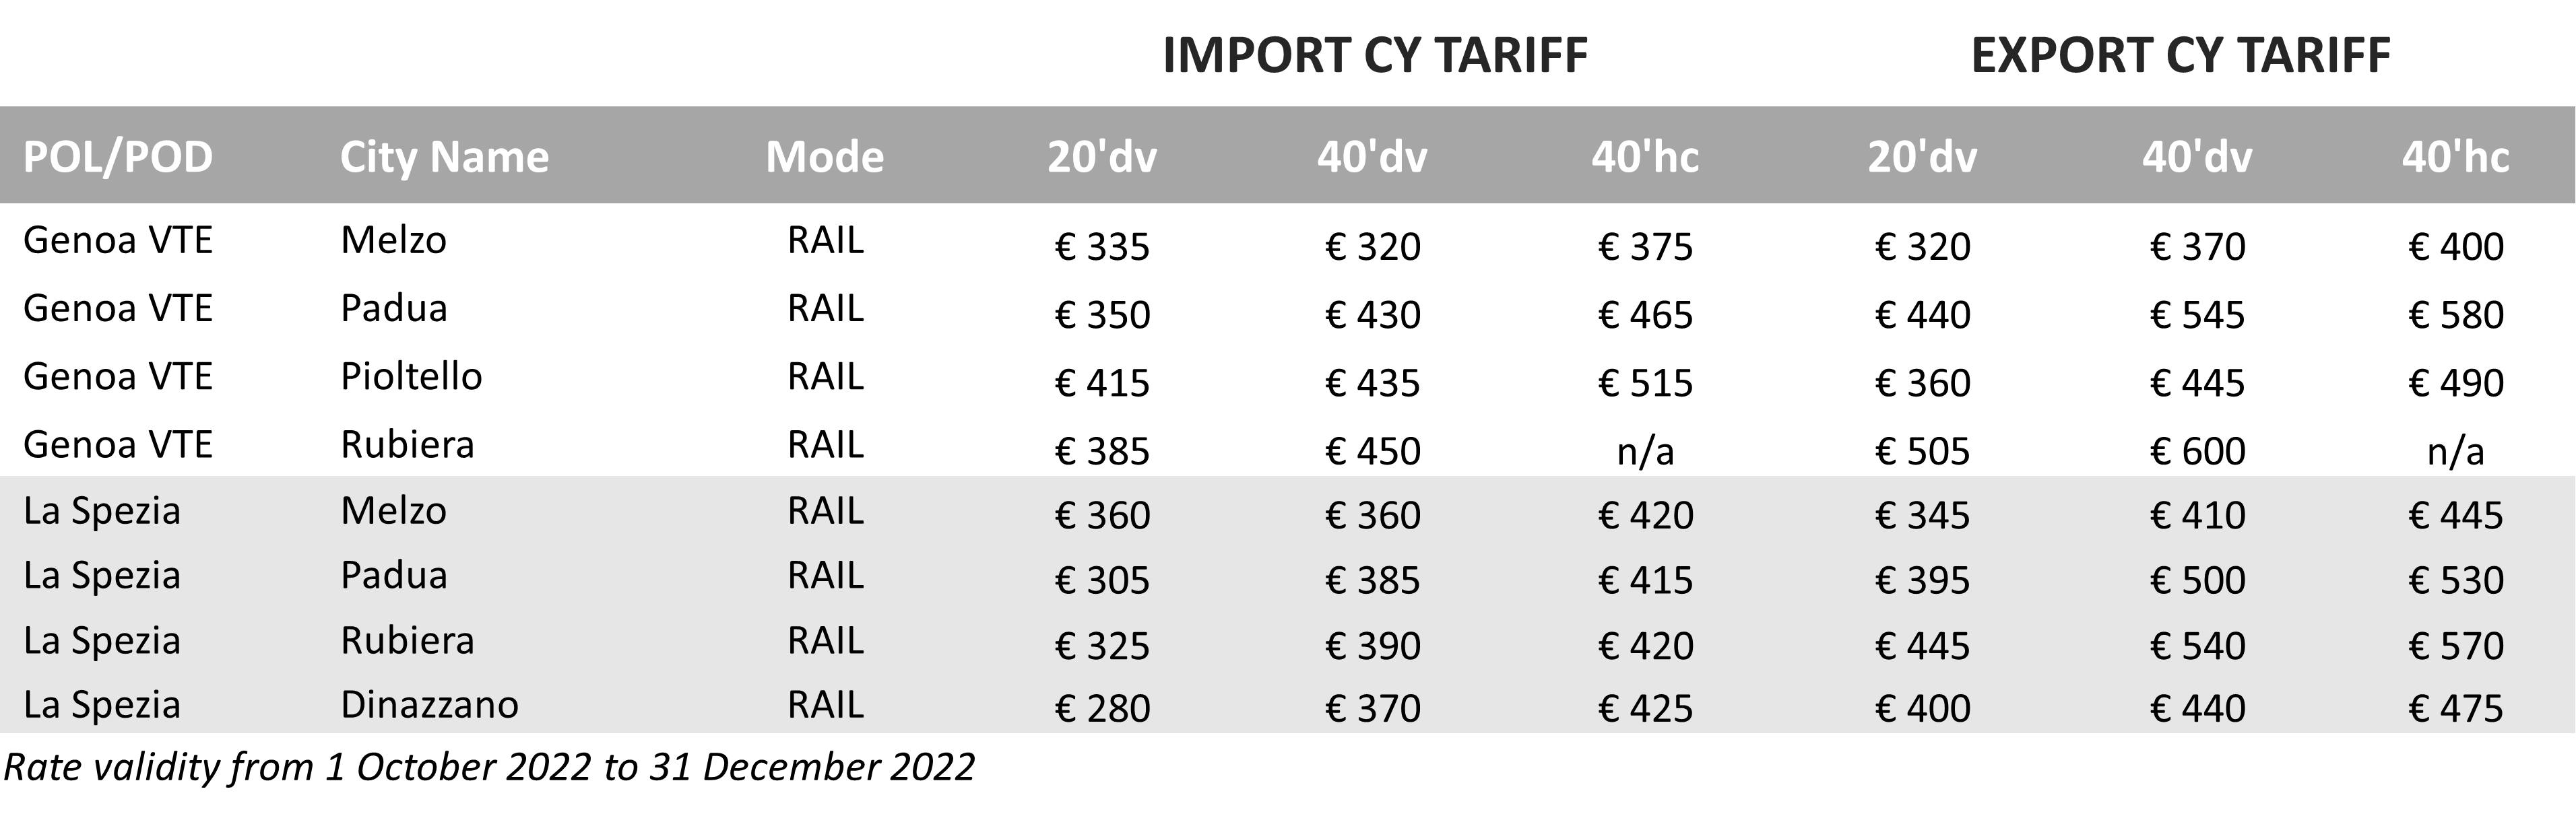 CY Tariff - 2022Q4 - IT